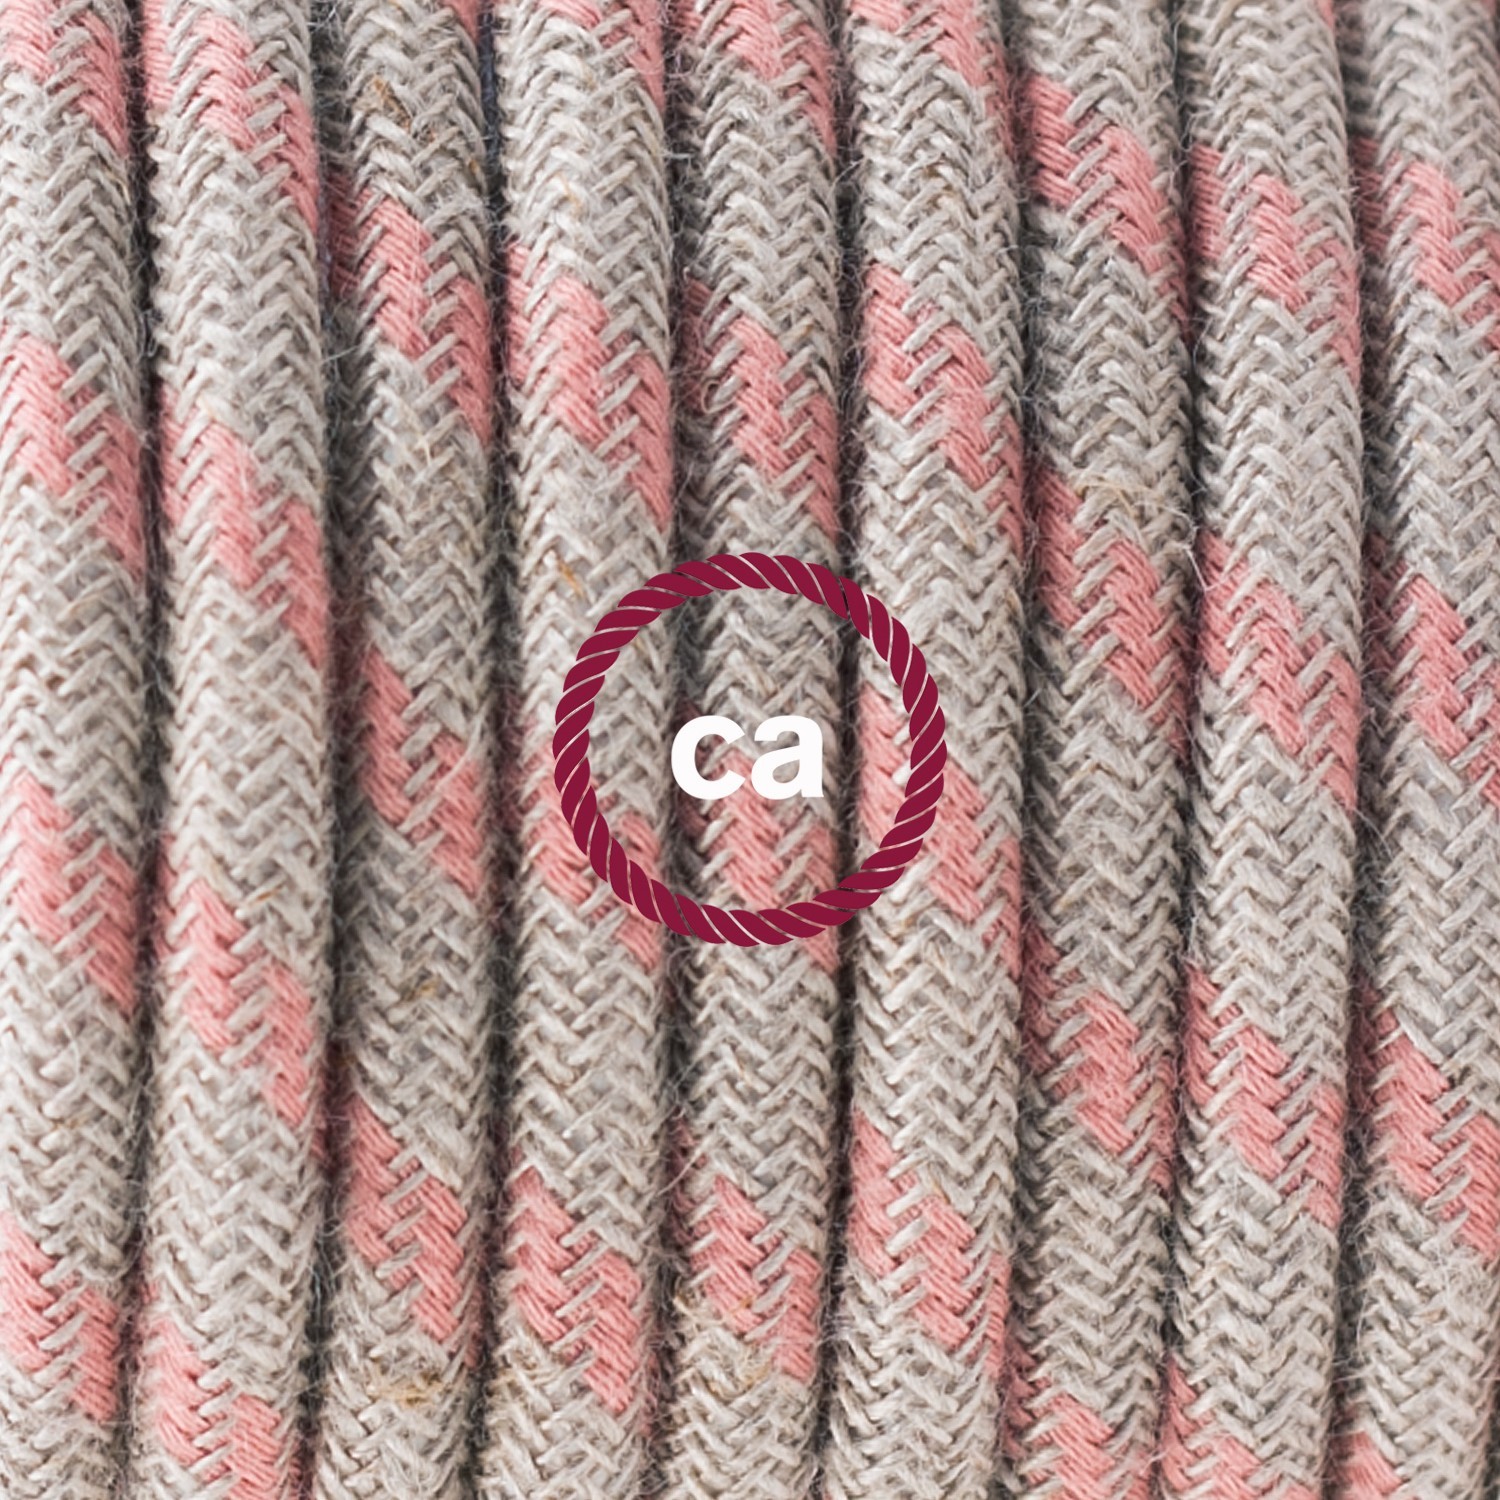 Cable Eléctrico Redondo en cajita, Recubierto en Algodón Stripes color Rosa Viejo y Lino Natural RD51